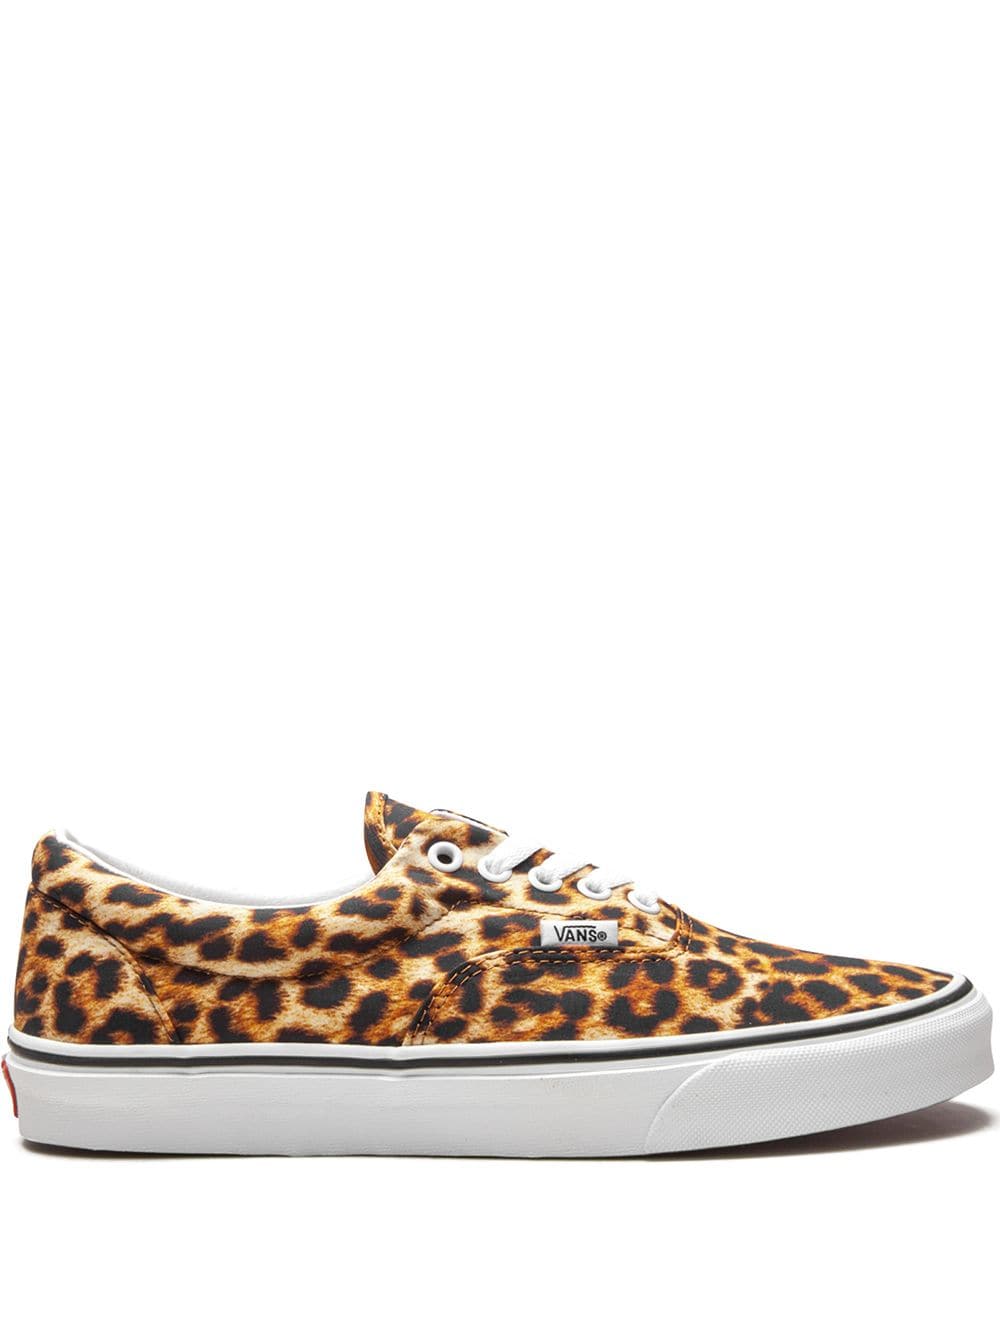 Vans Era "Leopard" sneakers - Brown von Vans